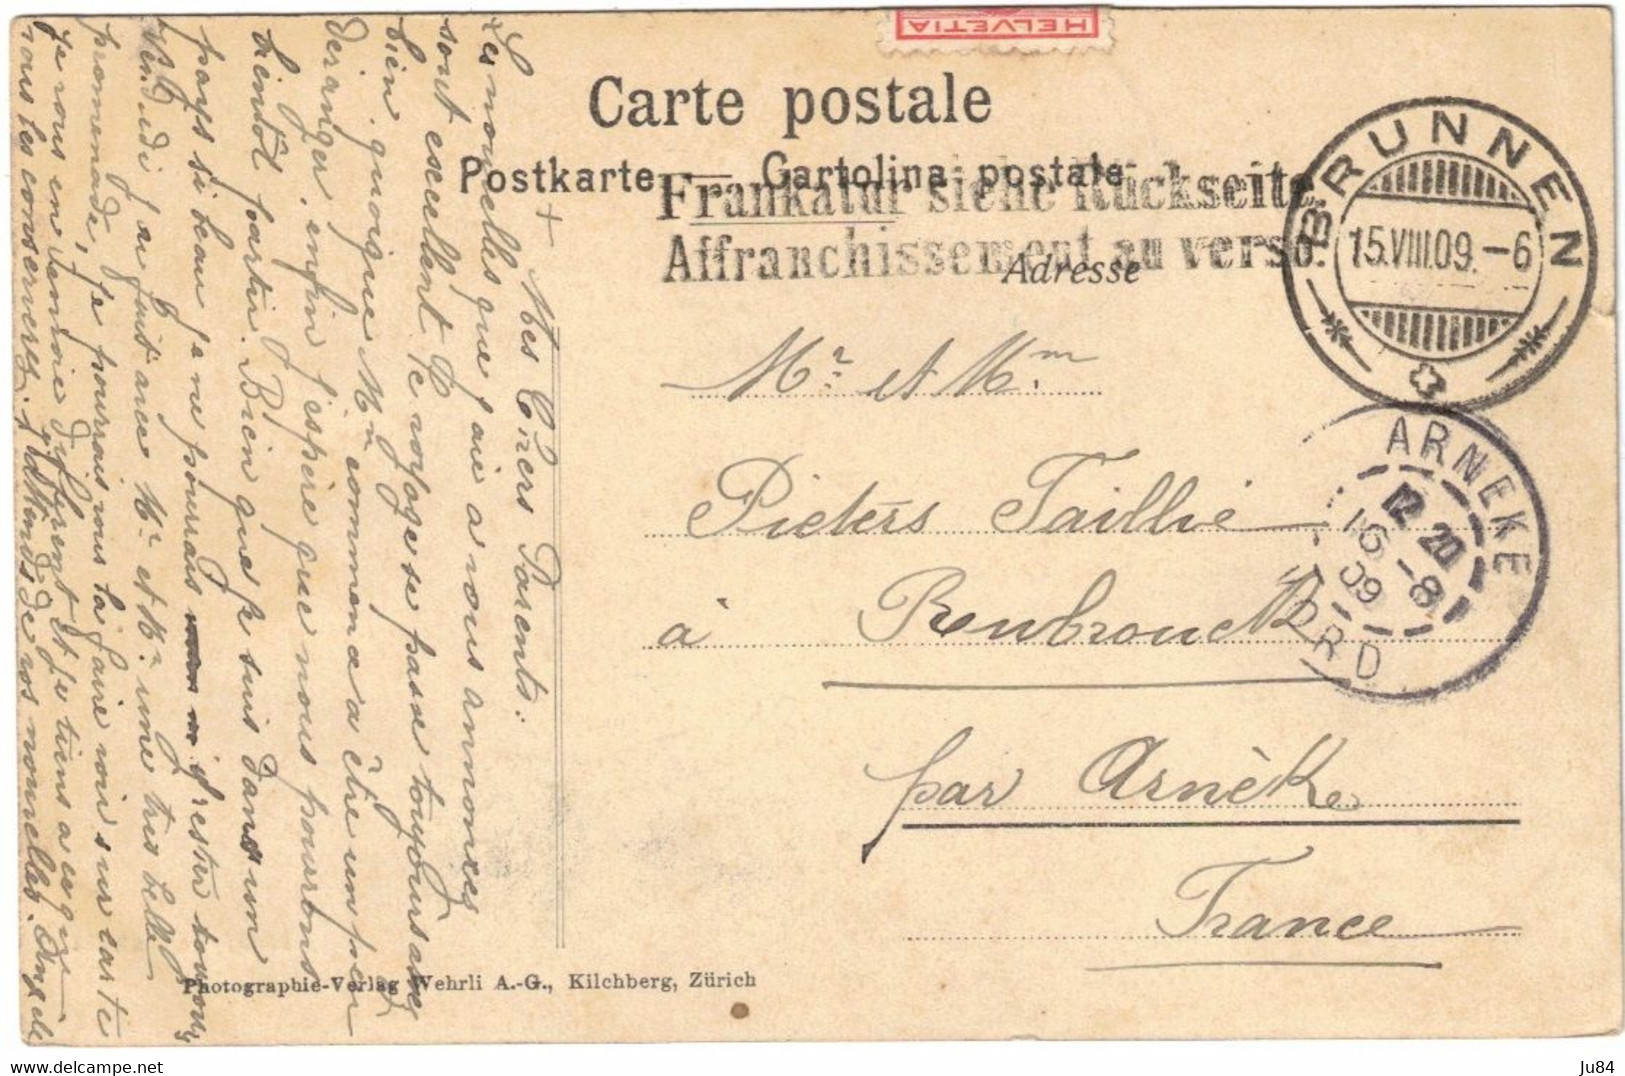 Suisse - Schwyz - Ingenbohl - Brunnen - Carte Postale Couleurs Pour Arneke (France) - 15 Août 1909 - Ingenbohl